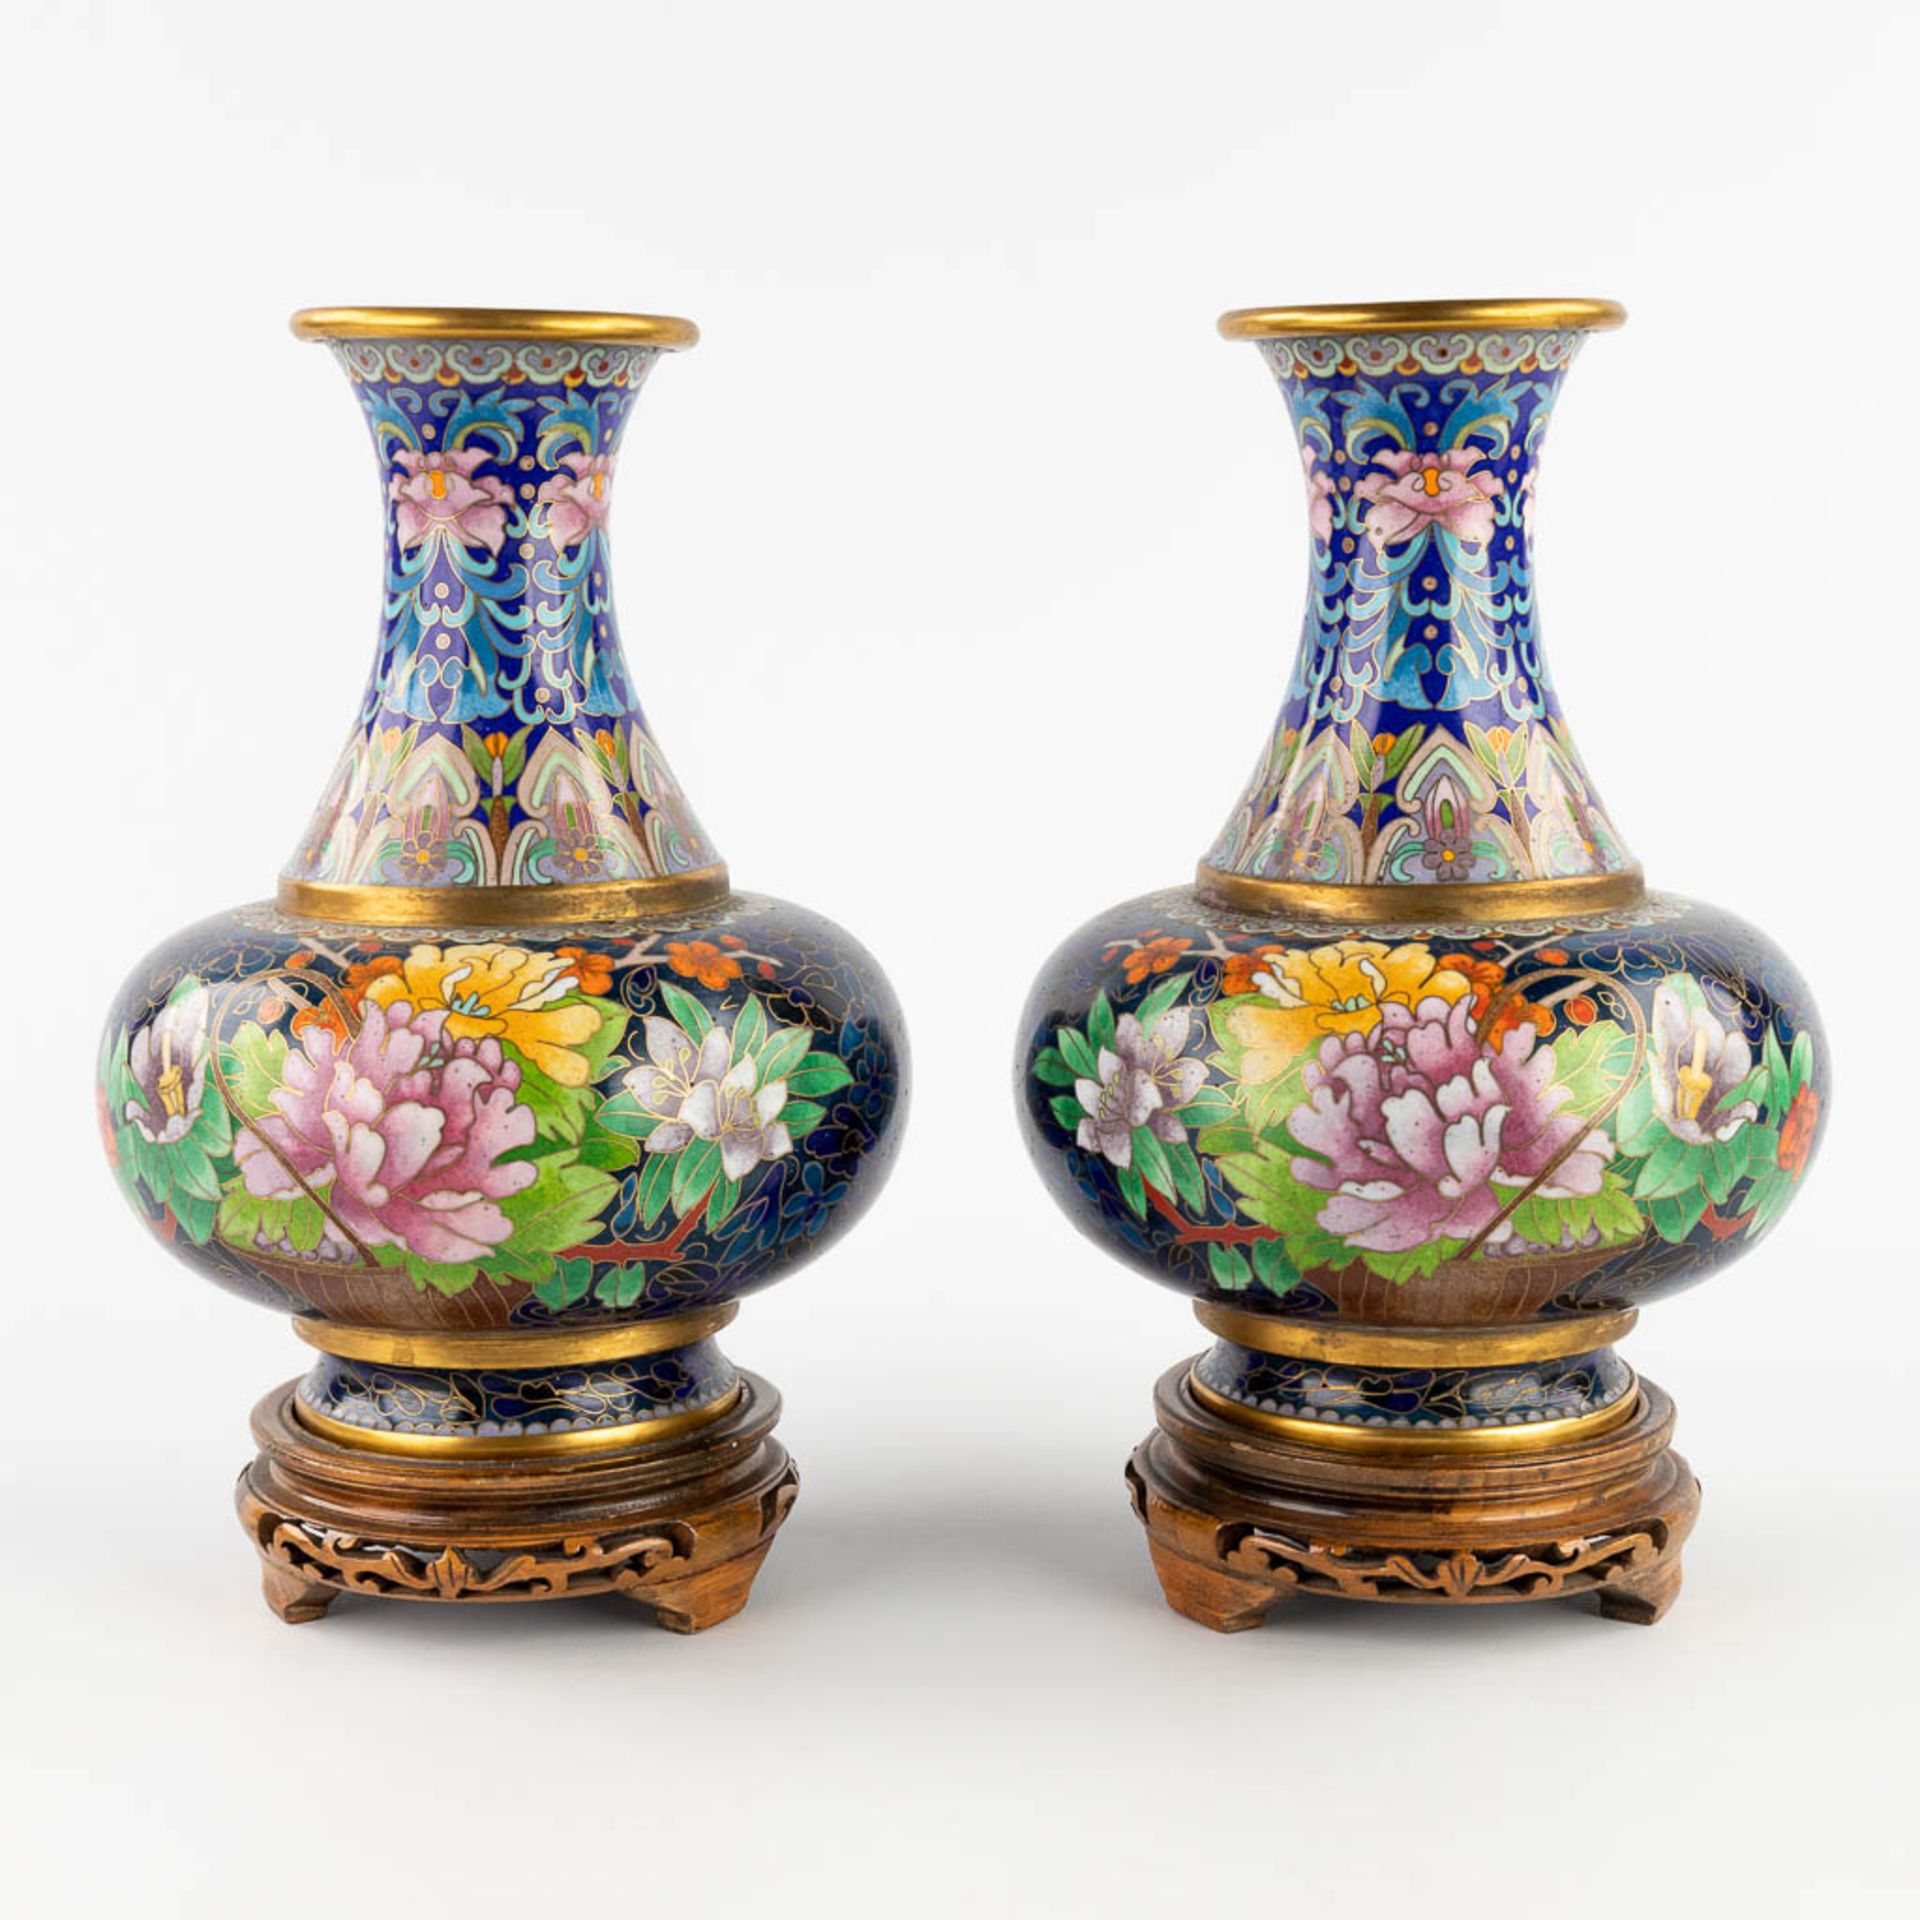 A pair of vases with a flower decor, cloisonné decor. 20th C. (W:18 x H:26 cm)